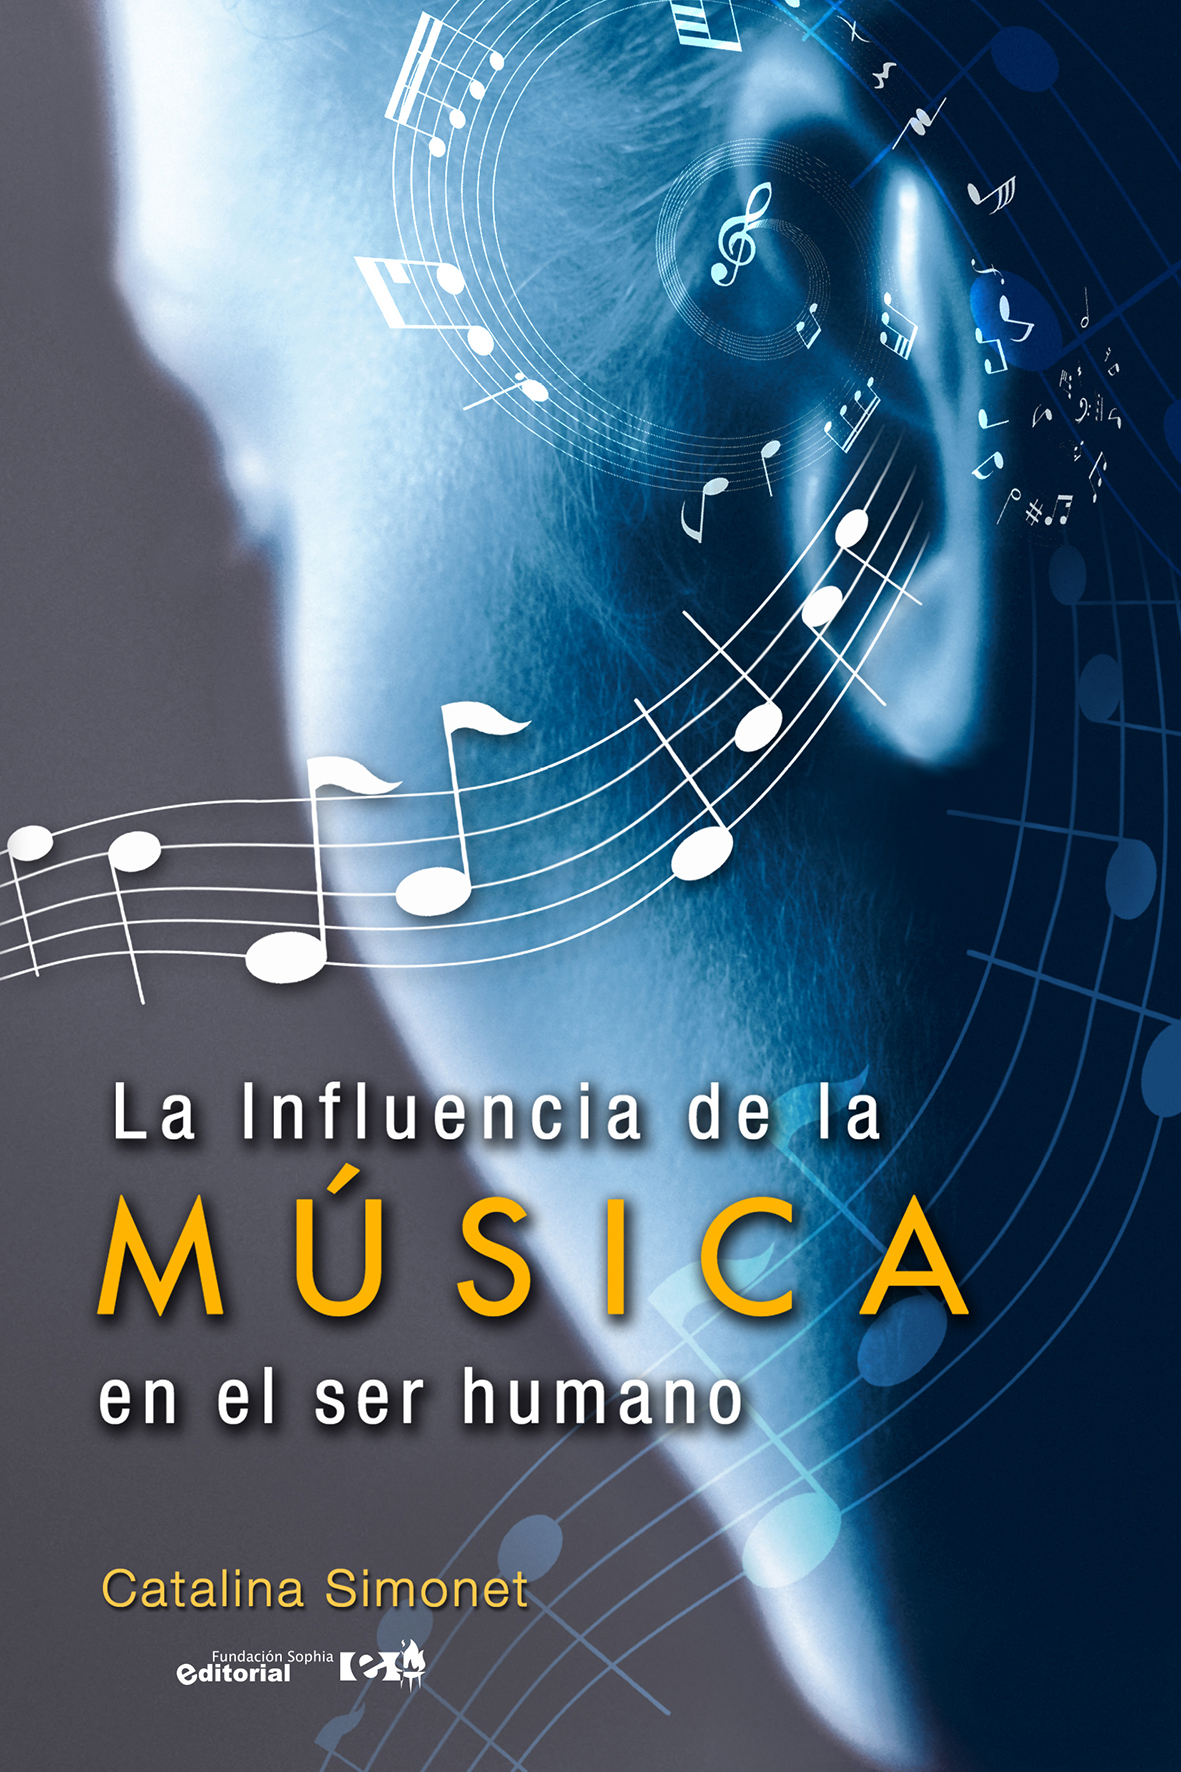 La influencia de la música en el ser humano -Catalina Simonet